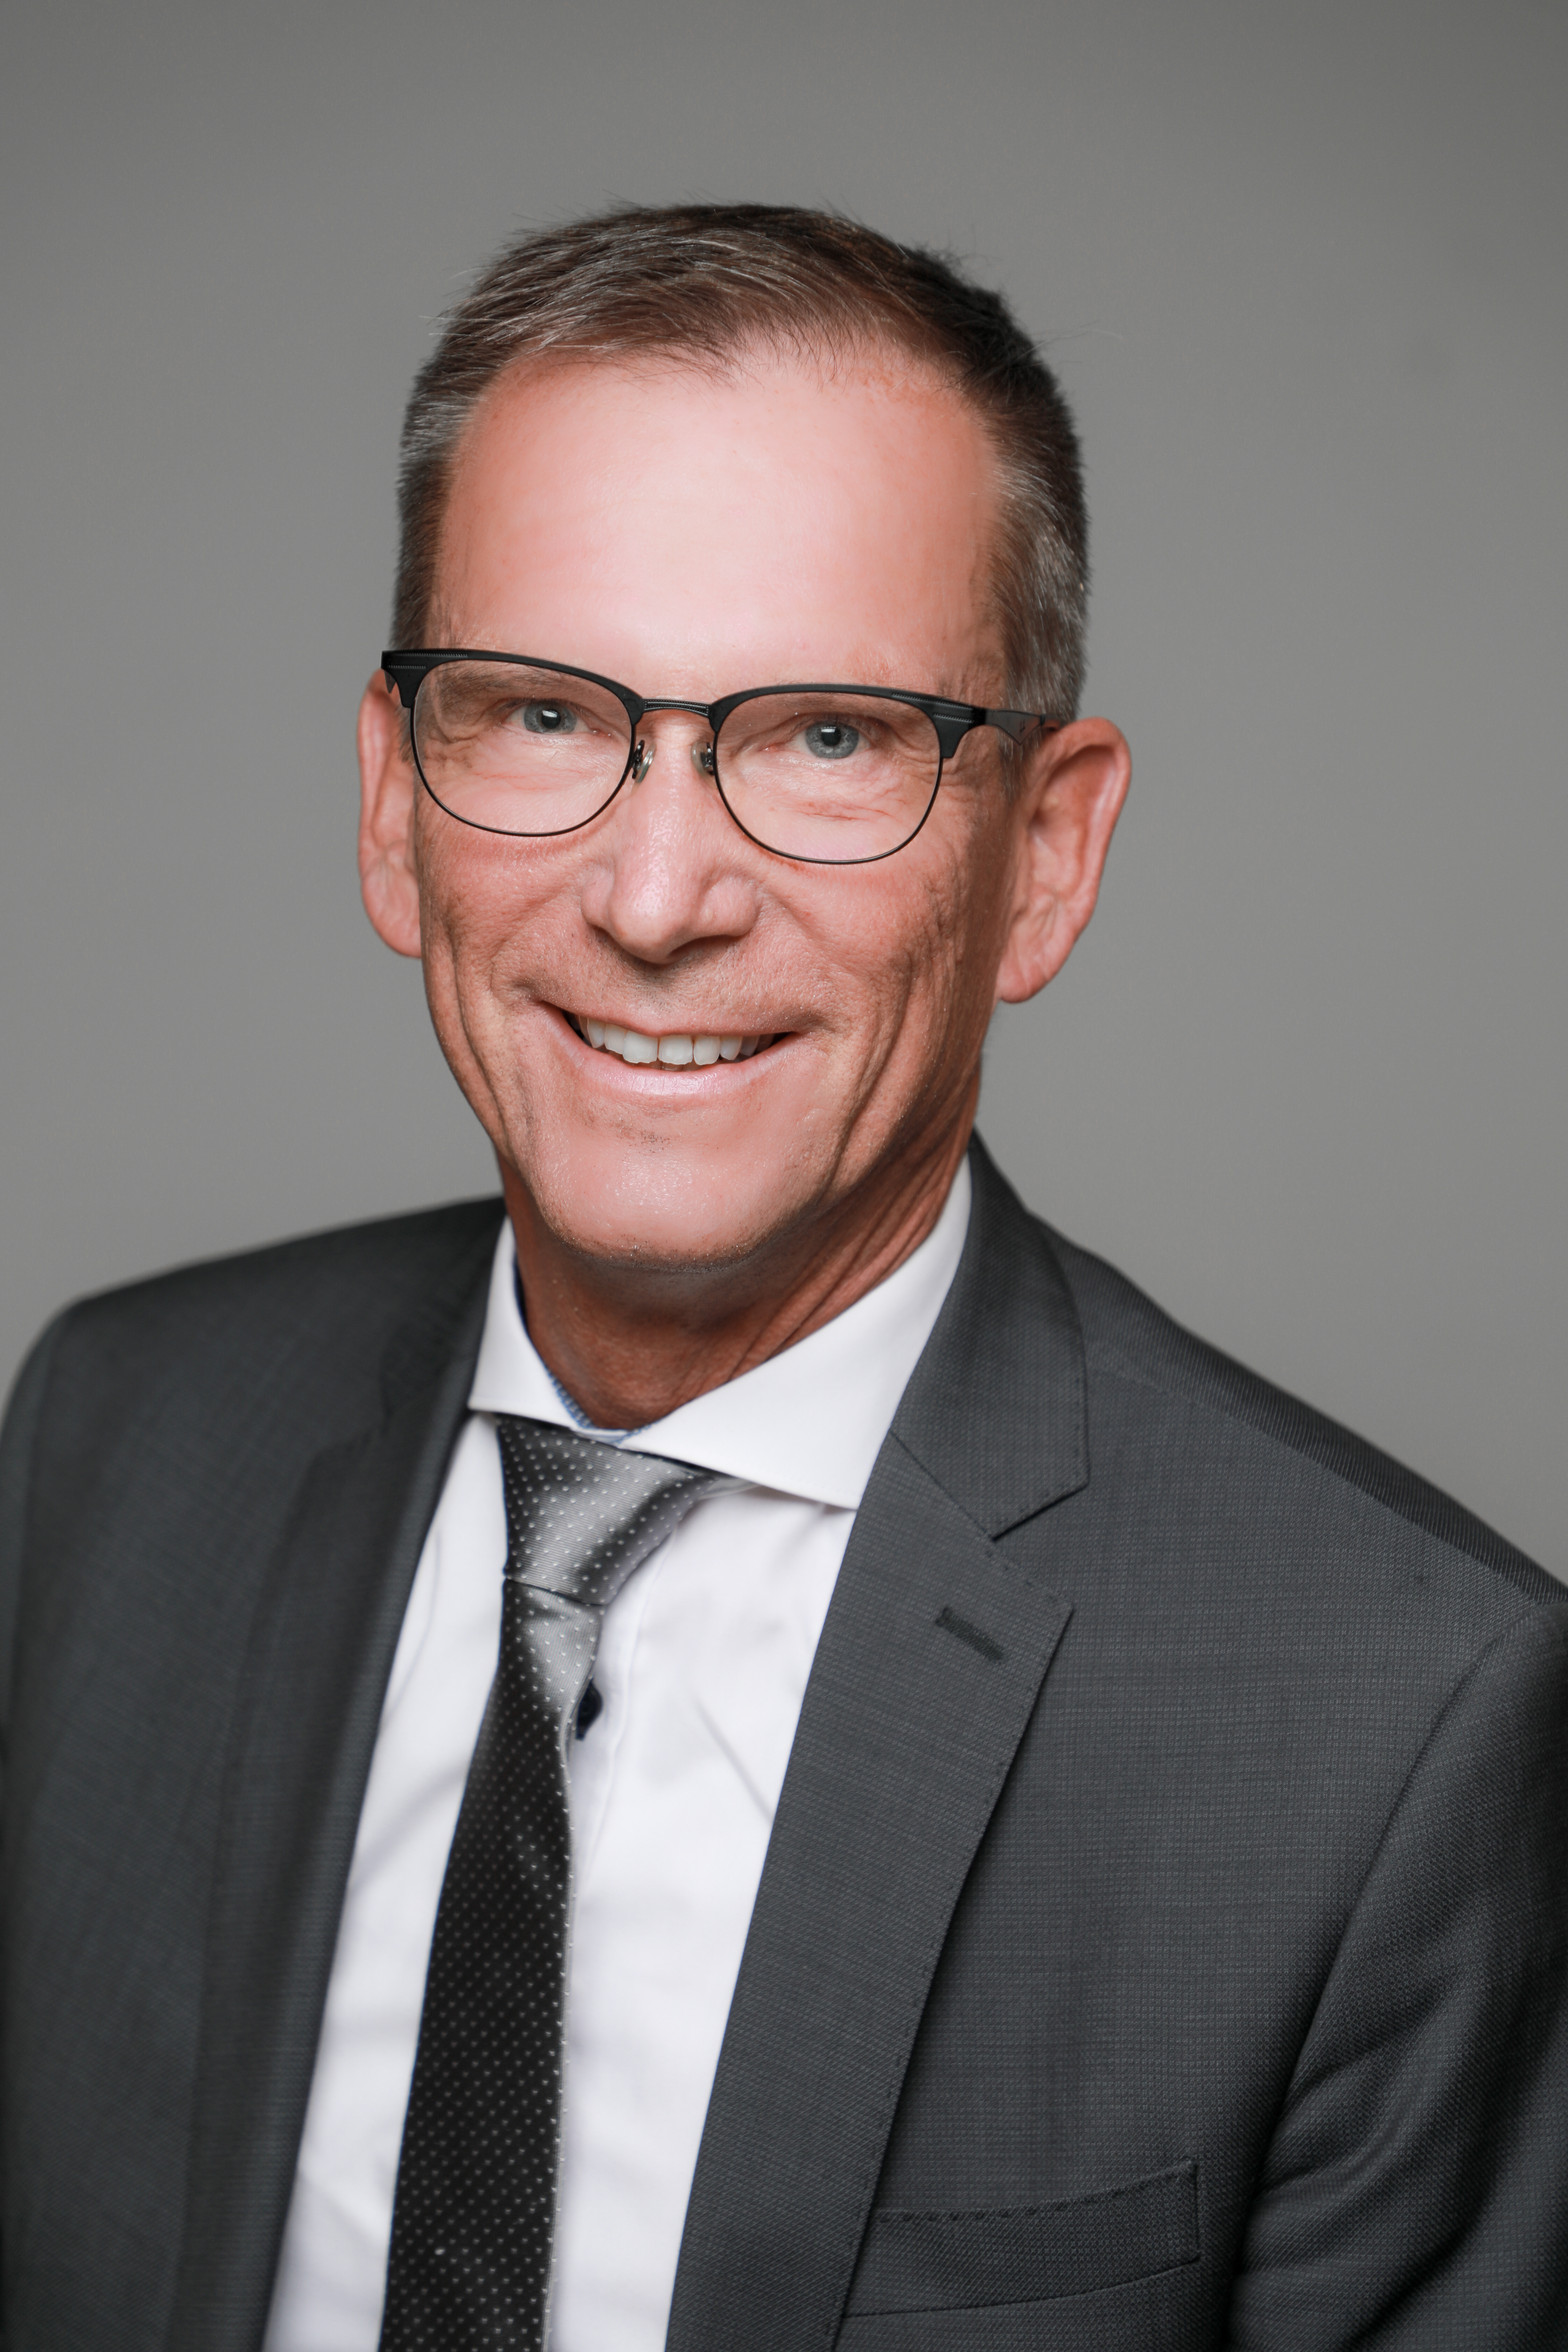 Bild zeigt Porträt des Präsidenten des Arbeitsgerichts Stuttgart Lutz Haßel